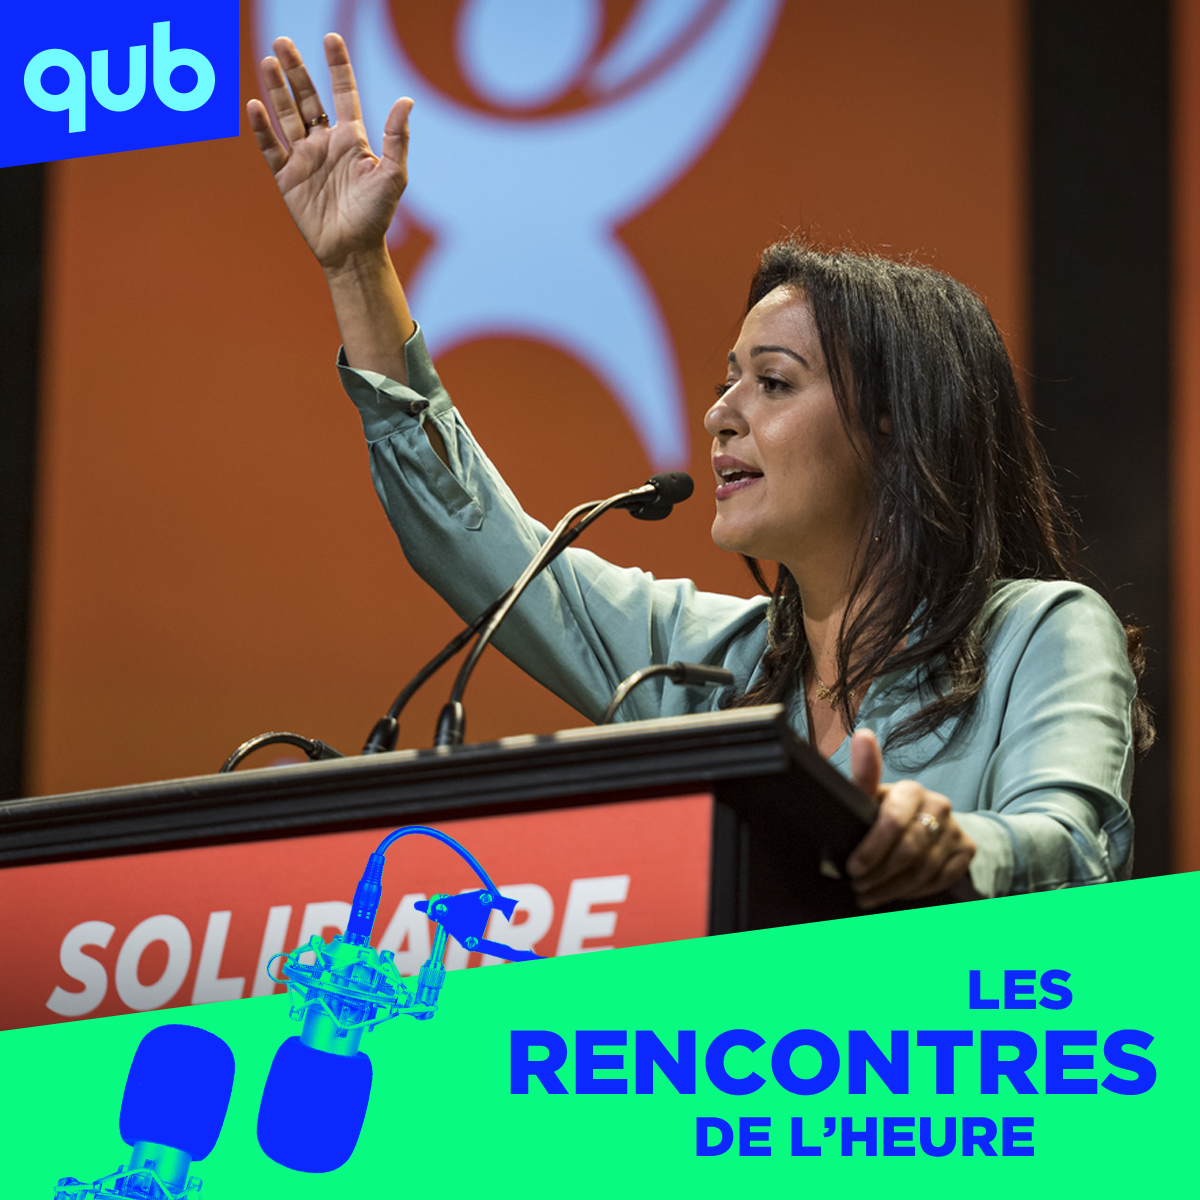 Québec solidaire fait de l’ingérence étrangère ! dénonce Philippe Lorange